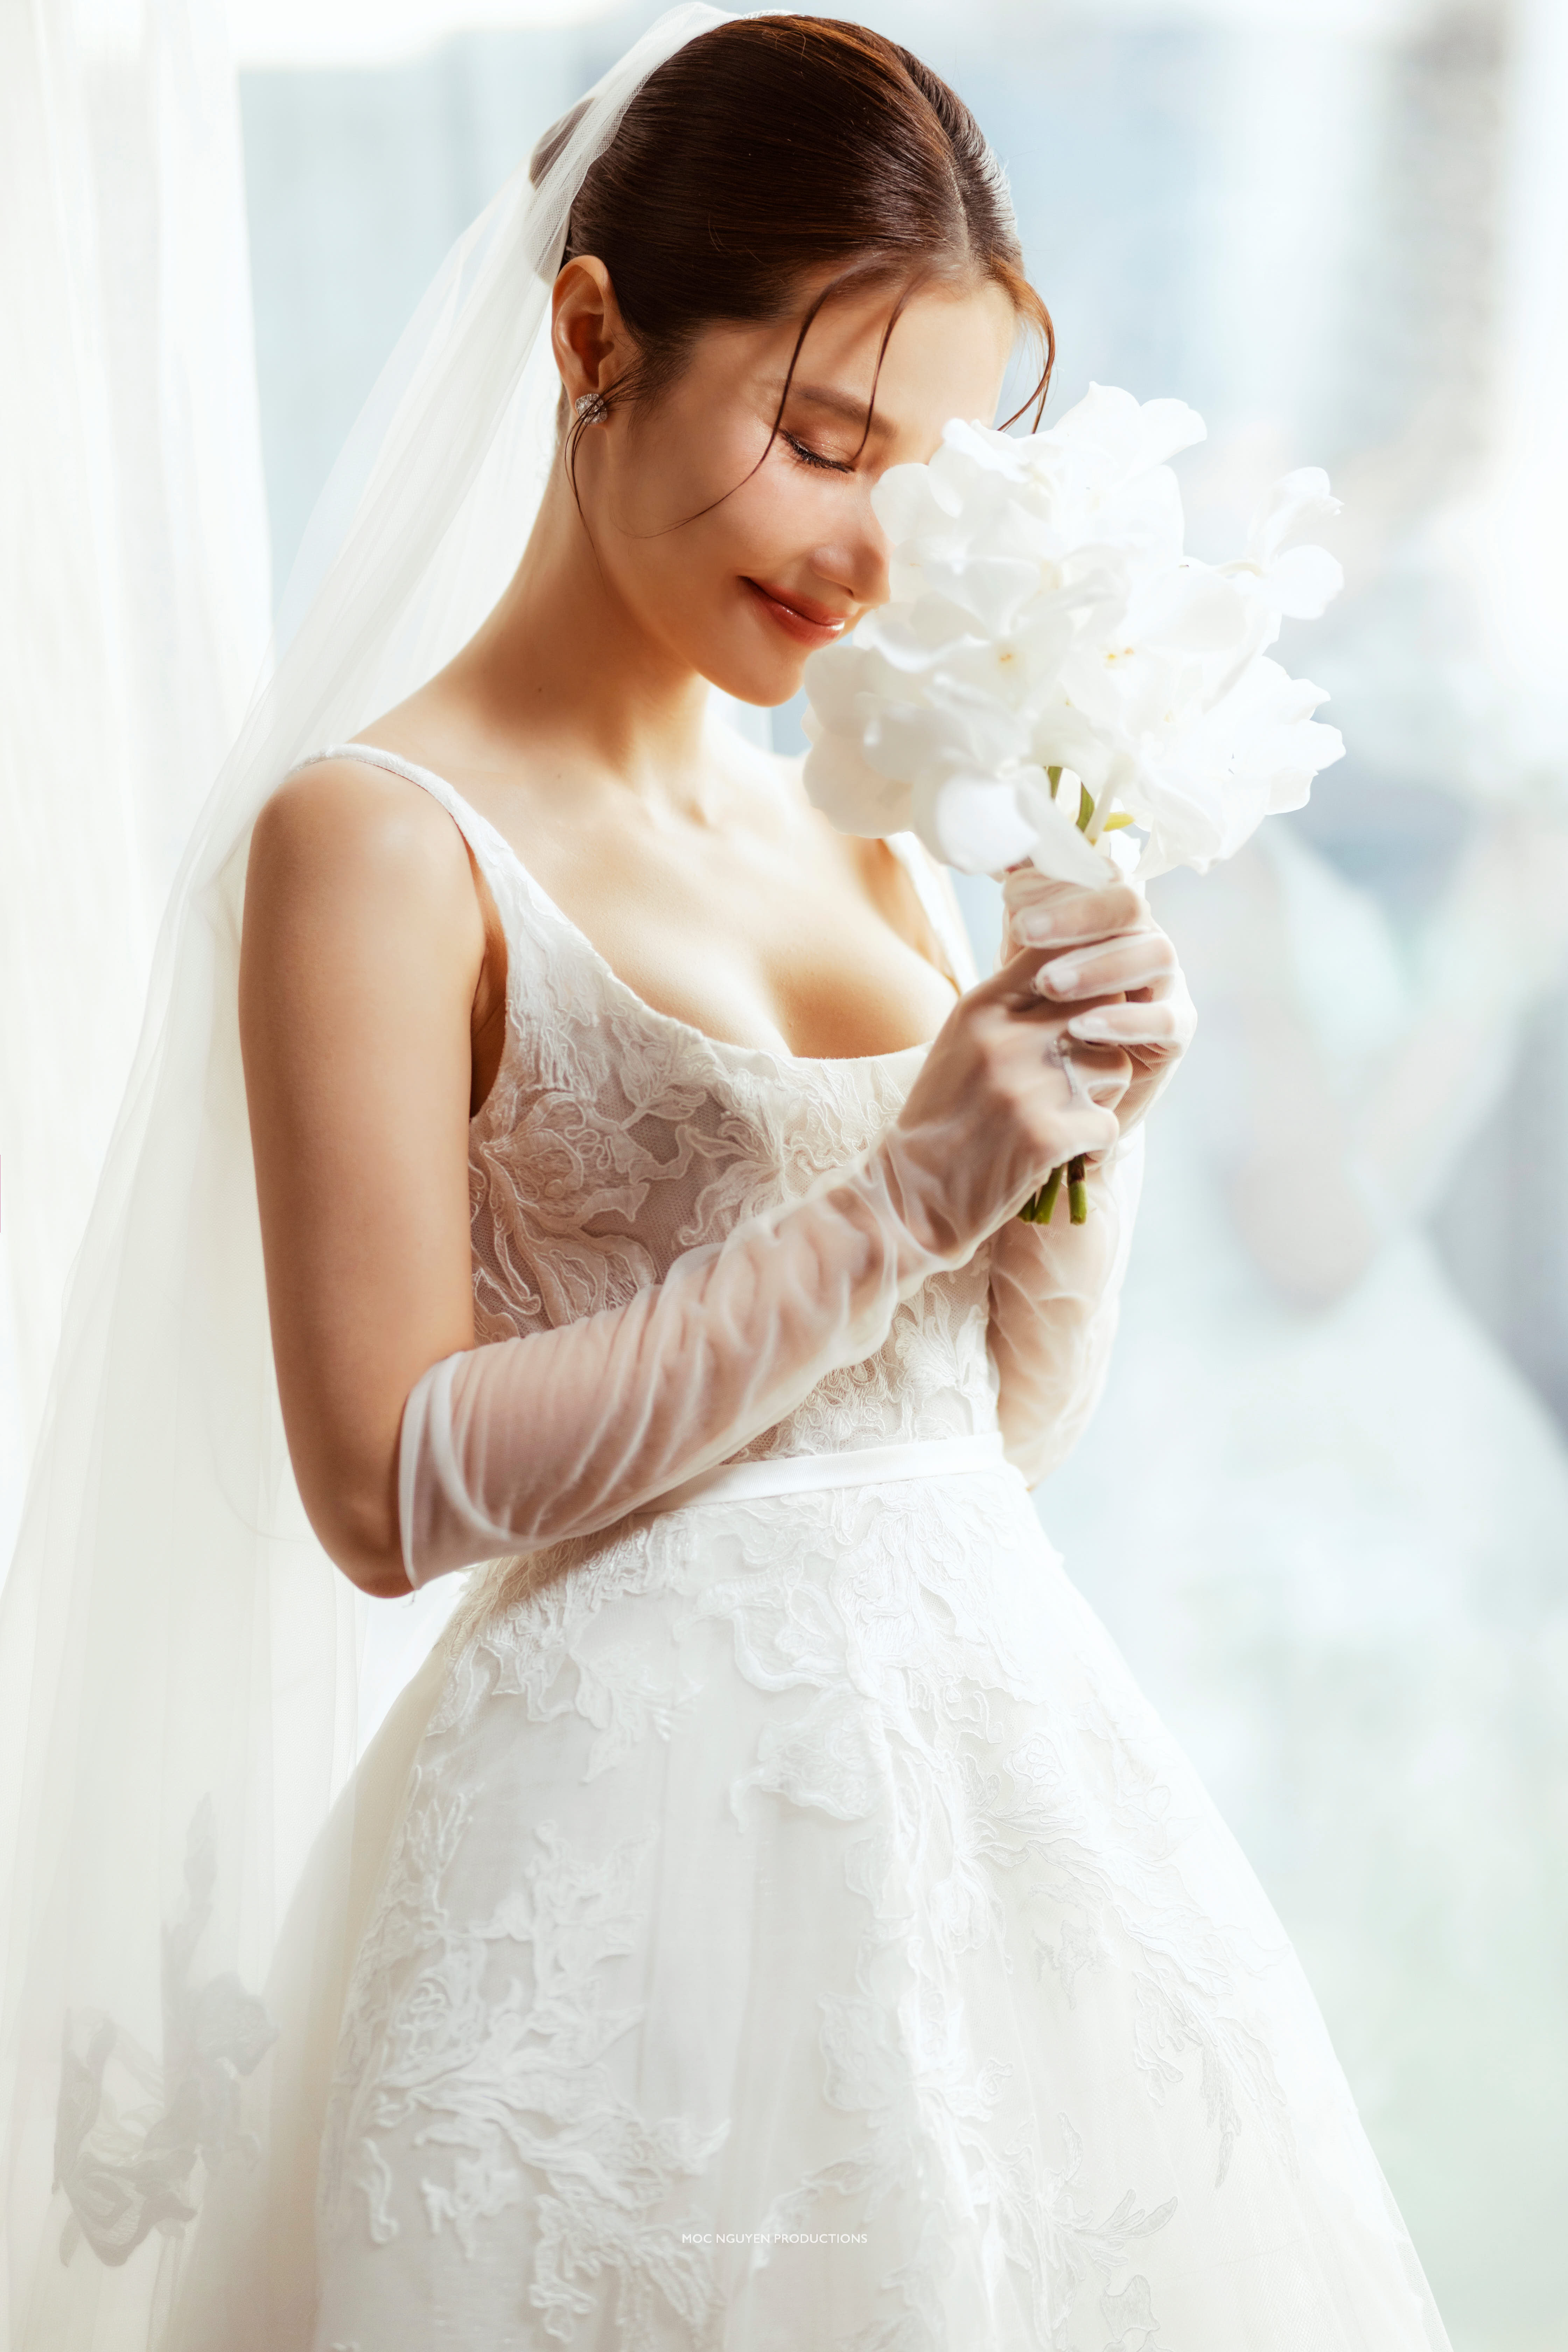 Giá thuê váy cưới Hồ Chí Minh là bao nhiêu? - AZWeding - Tổ chức sự kiện và  tiệc cưới chuyên nghiệp